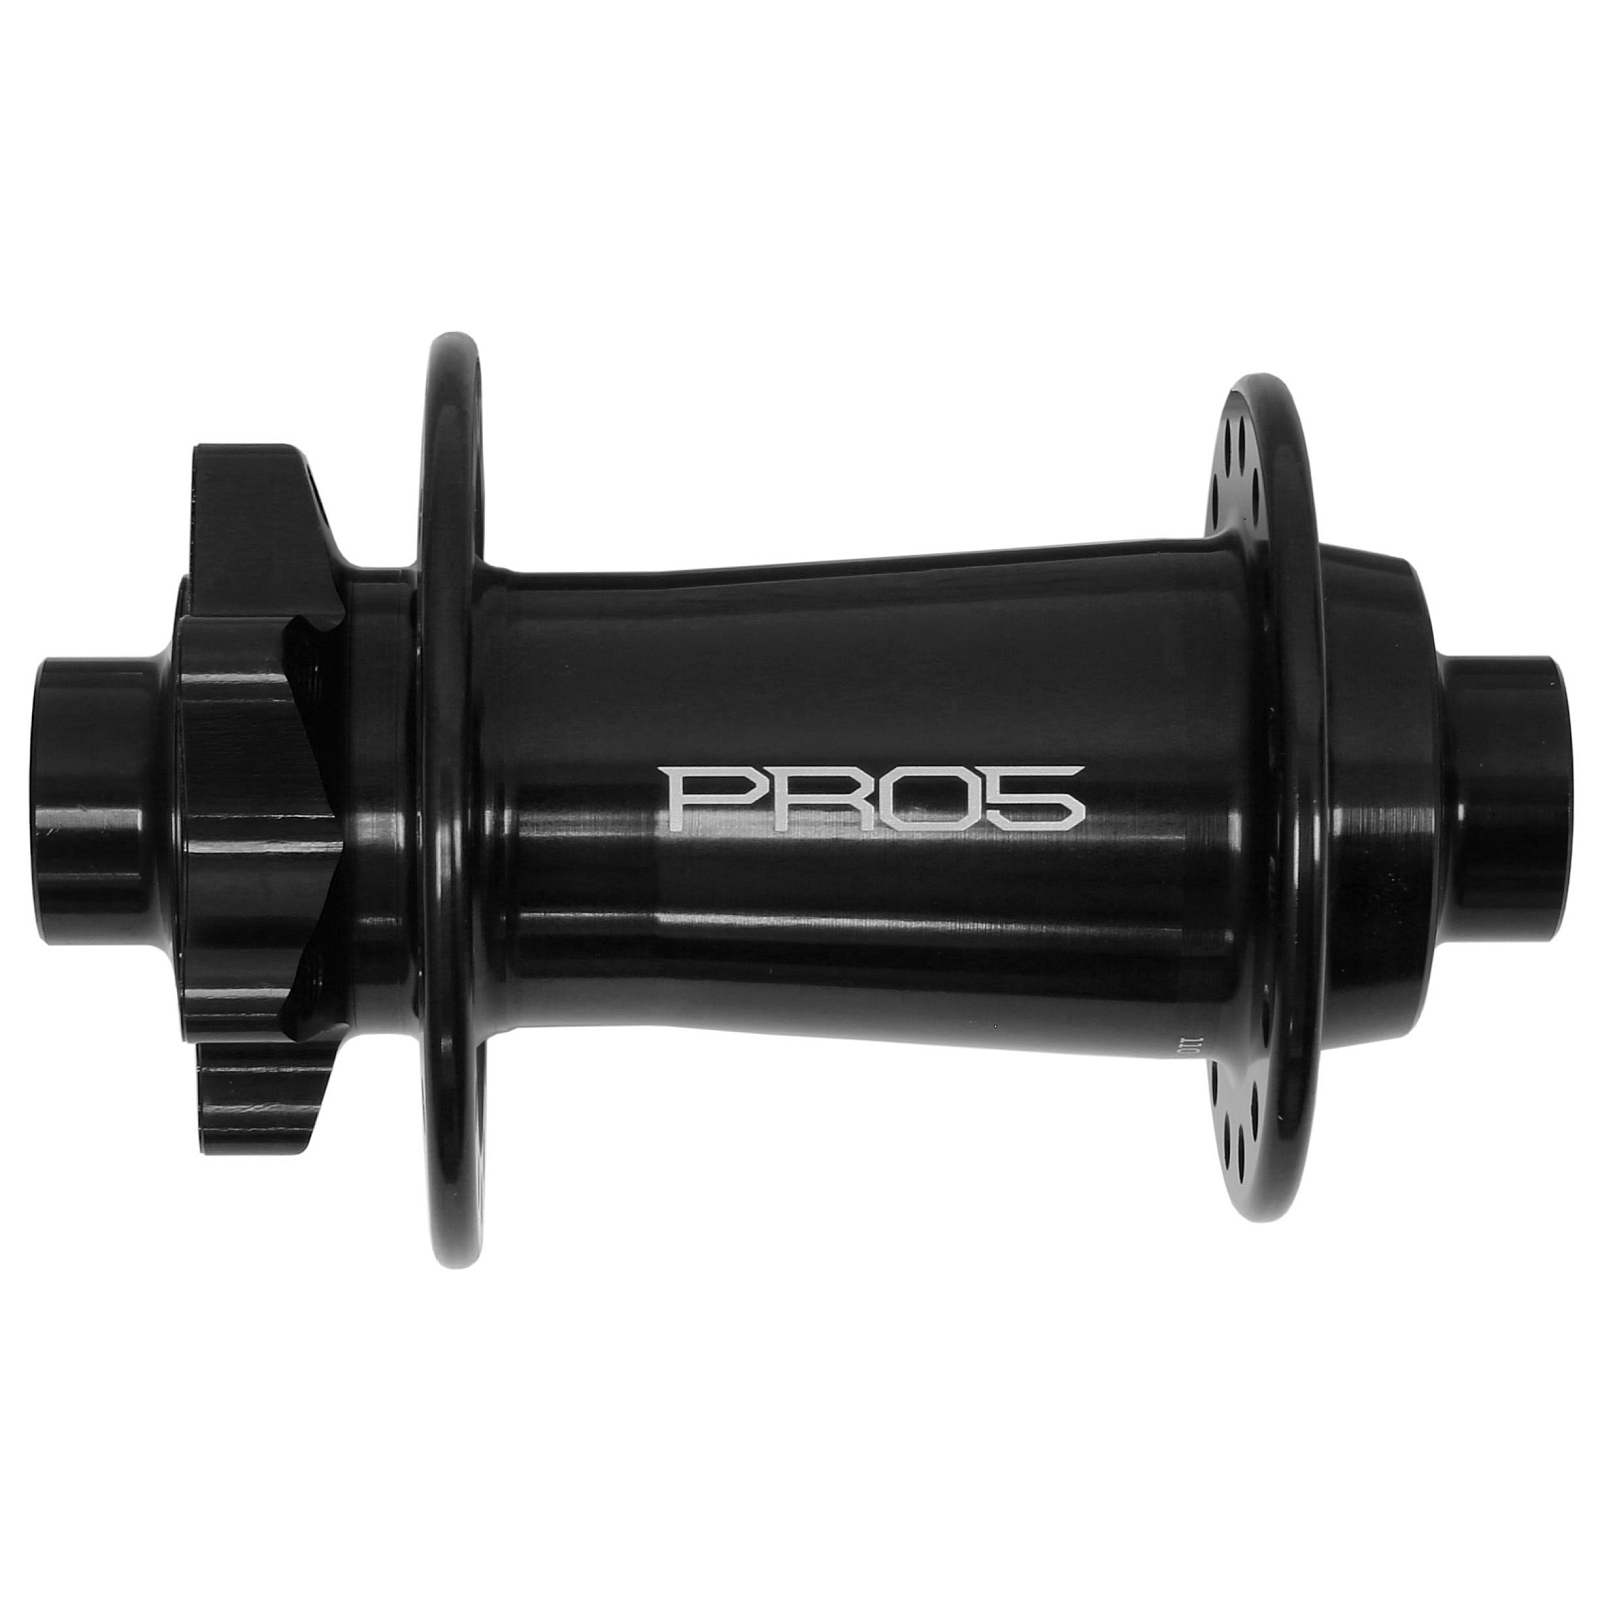 Produktbild von Hope Pro 5 Vorderradnabe - 6-Bolt - 15x110mm Boost - schwarz